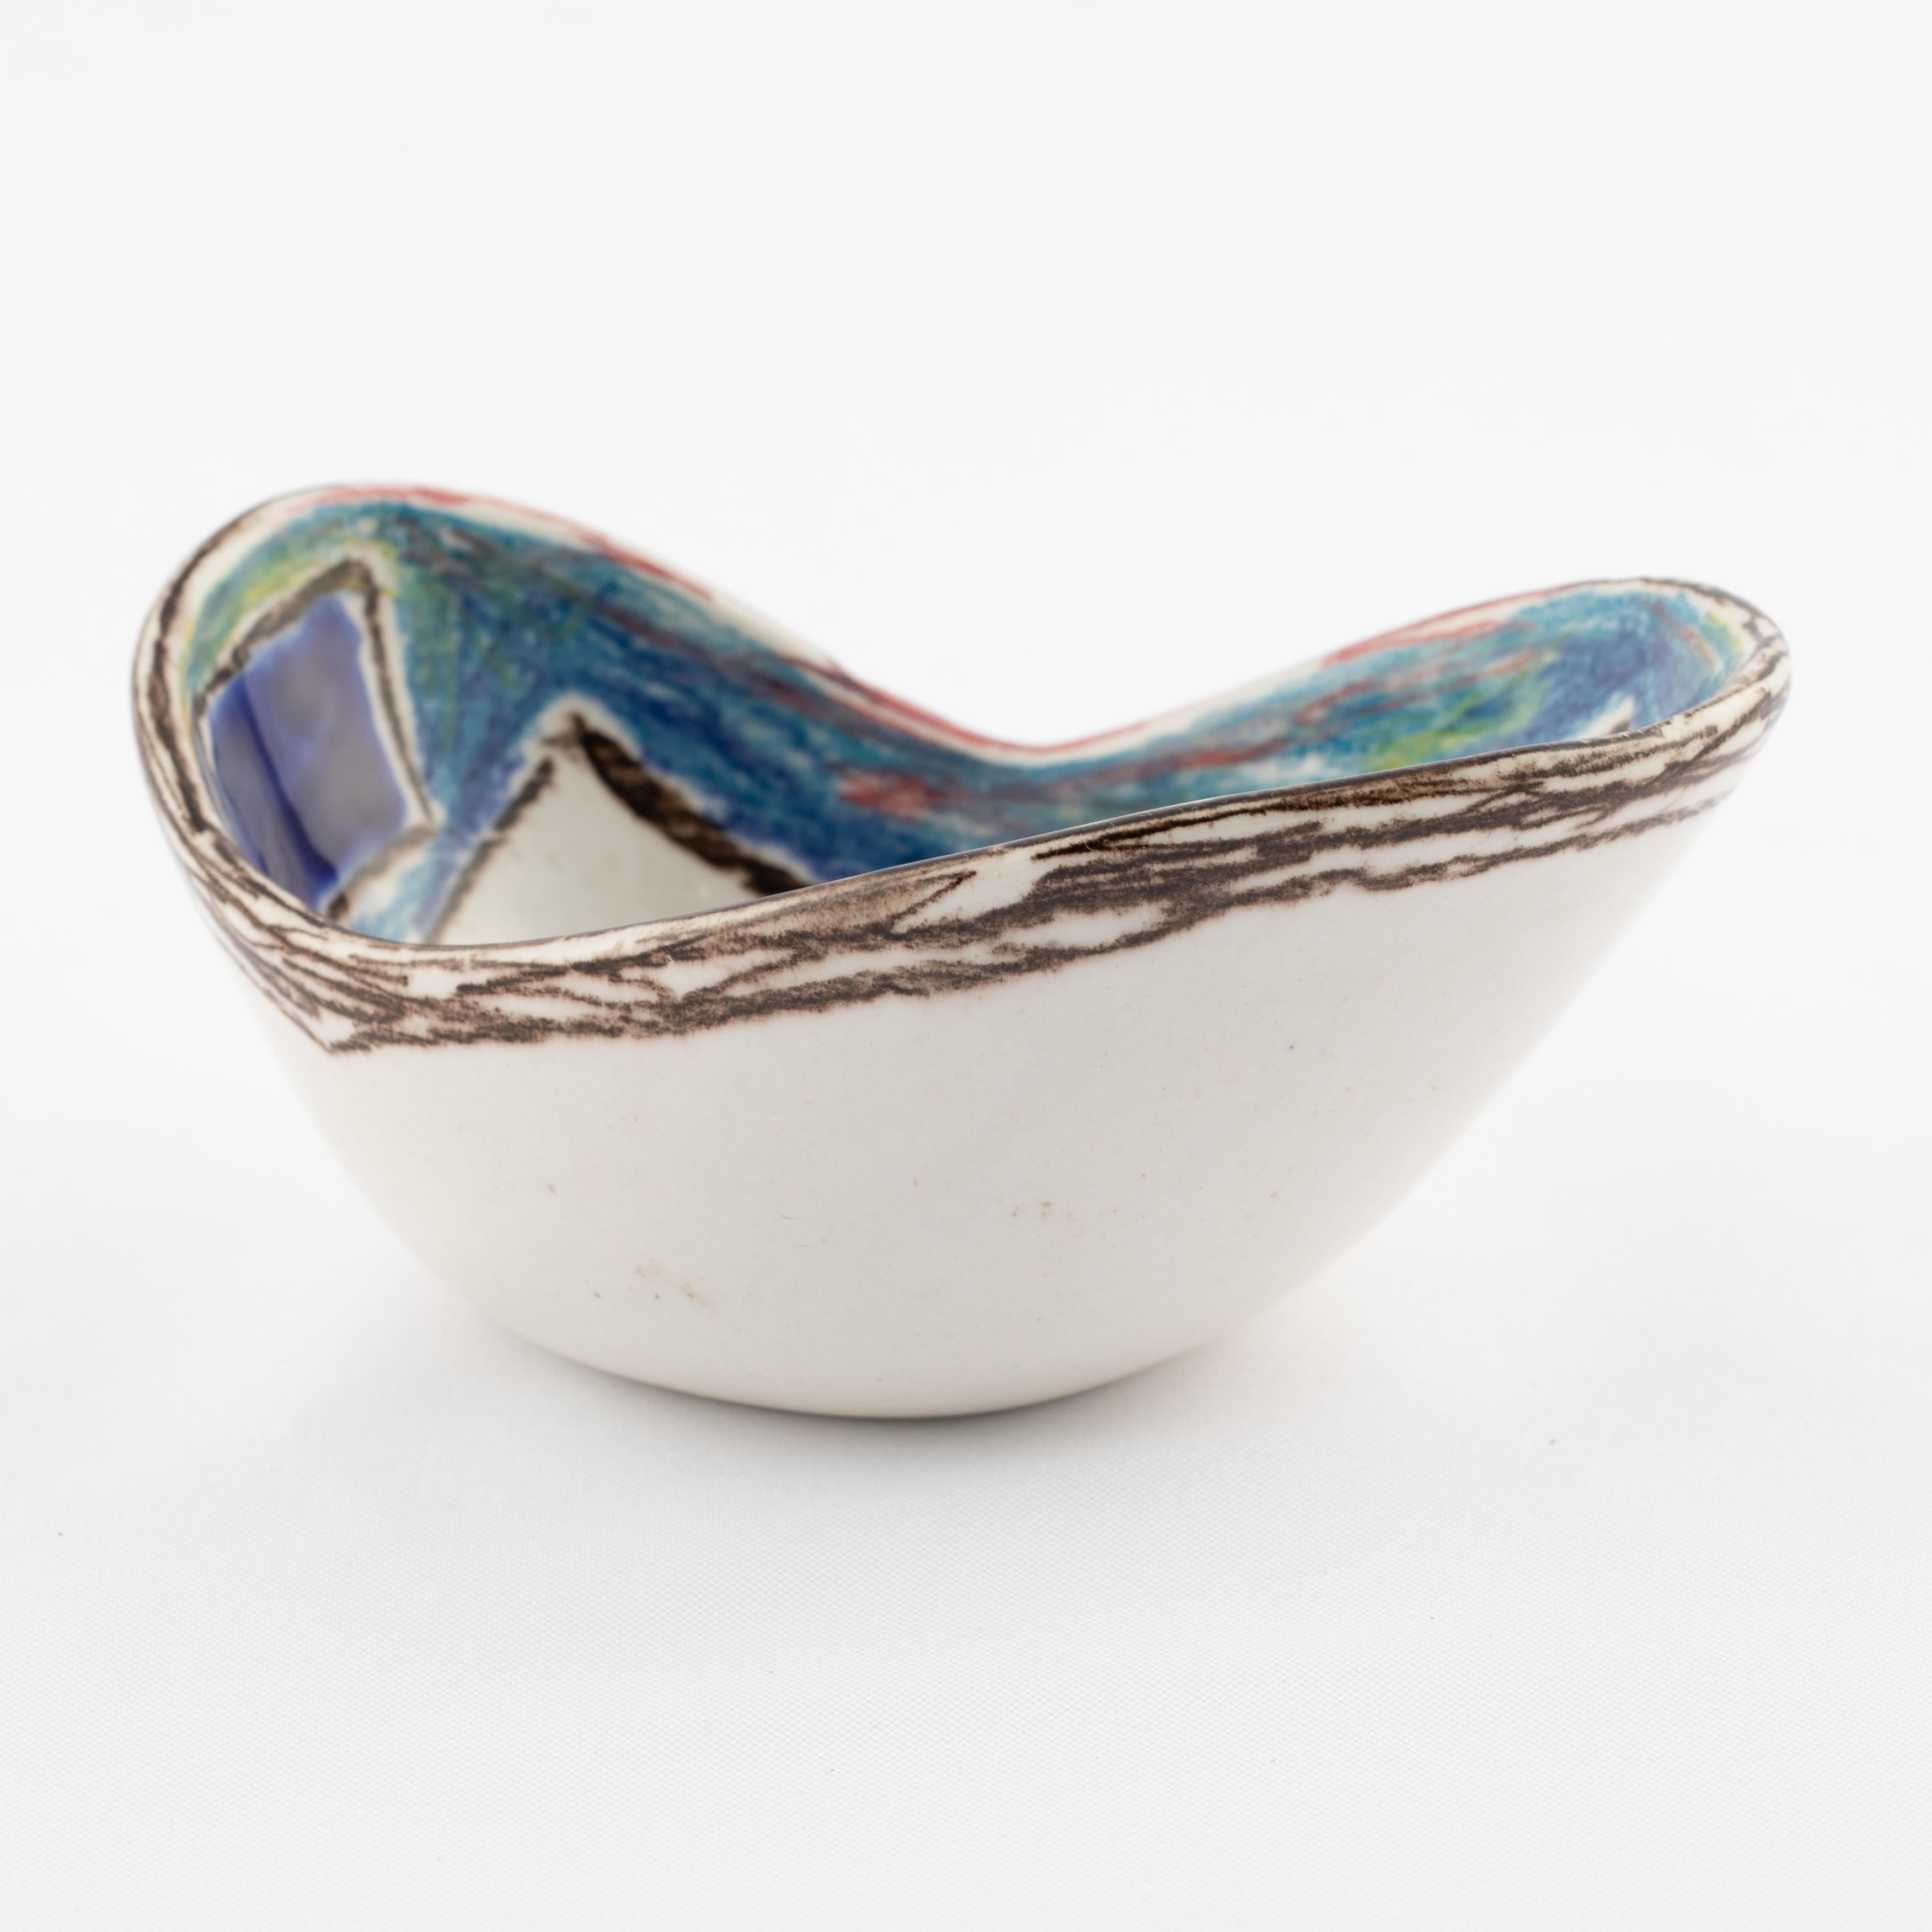 Marcello Fantoni Ceramic Bowl with Abstract Design, circa 1960s For Sale 1